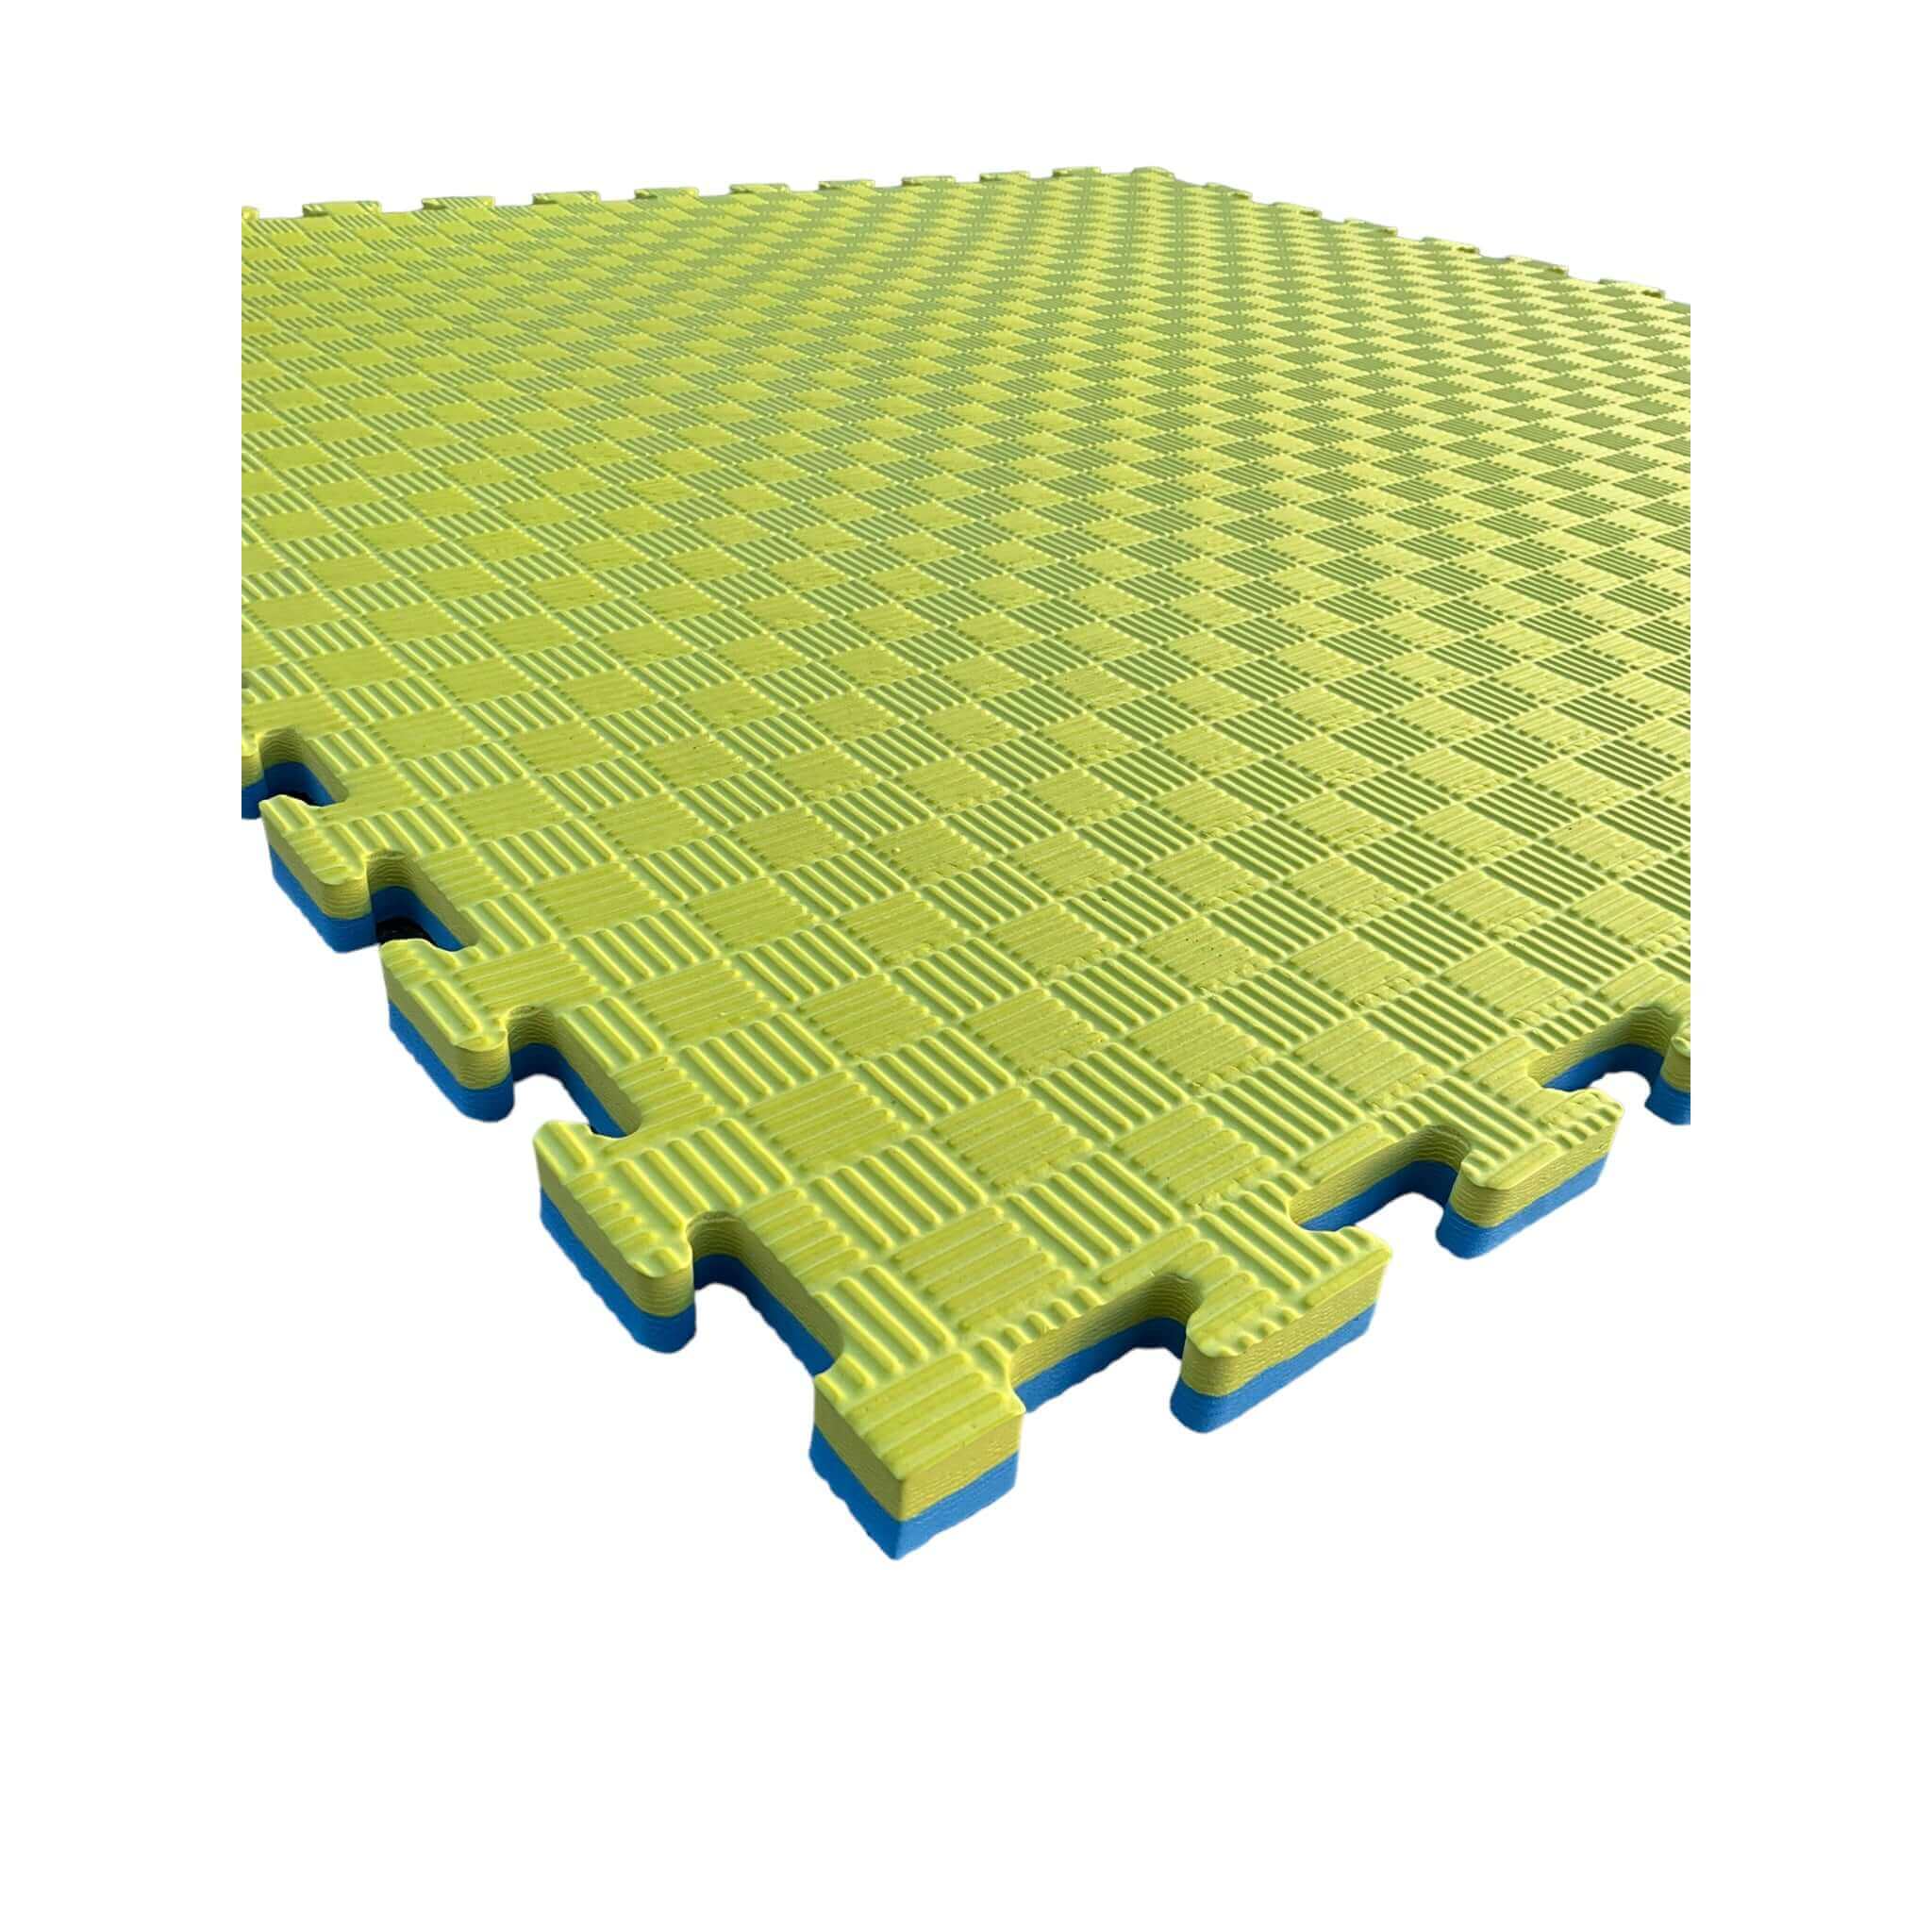 Pack of 50 - 20mm EVA Foam Jigsaw Interlocking Floor Tile Mat 1m x 1m BLUE / YELLOW | INSOURCE